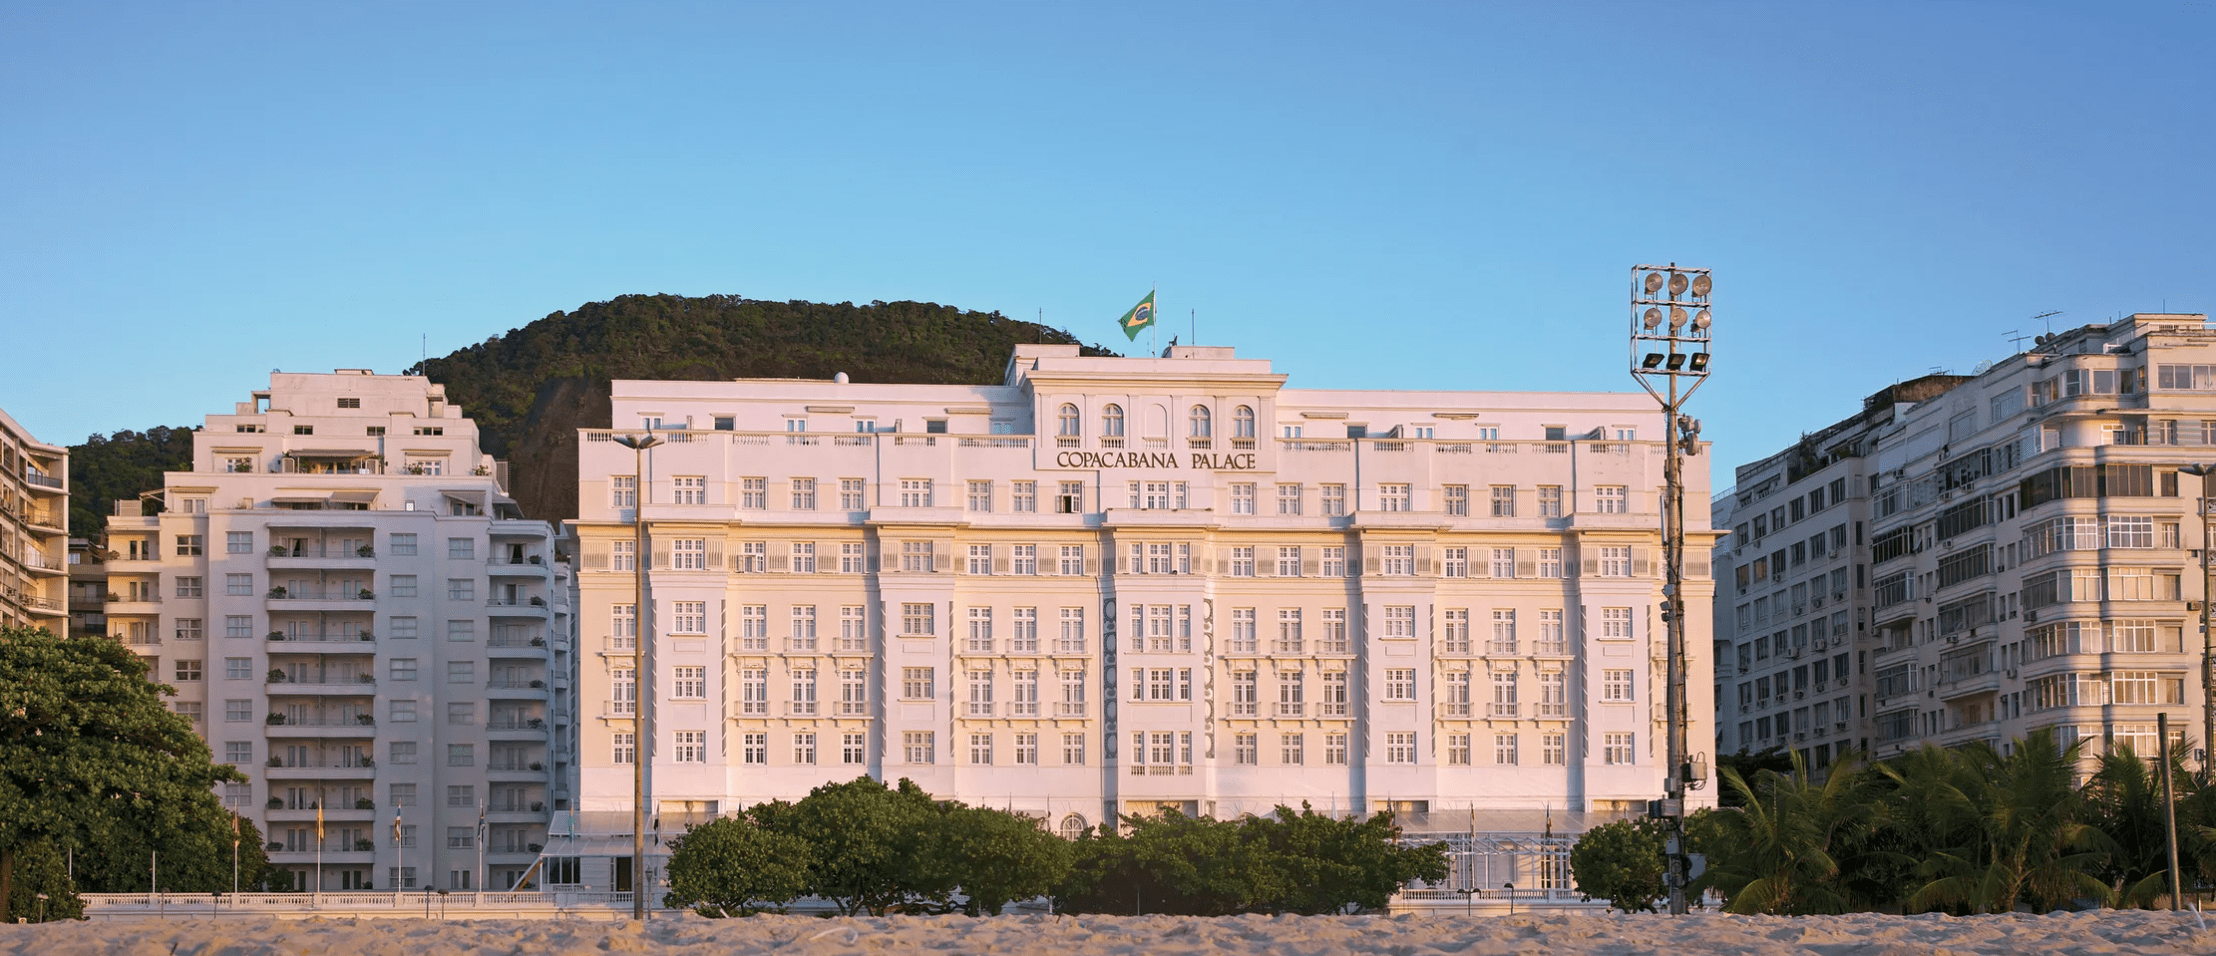 Copacabana Palace: Um destino icônico de luxo e glamour